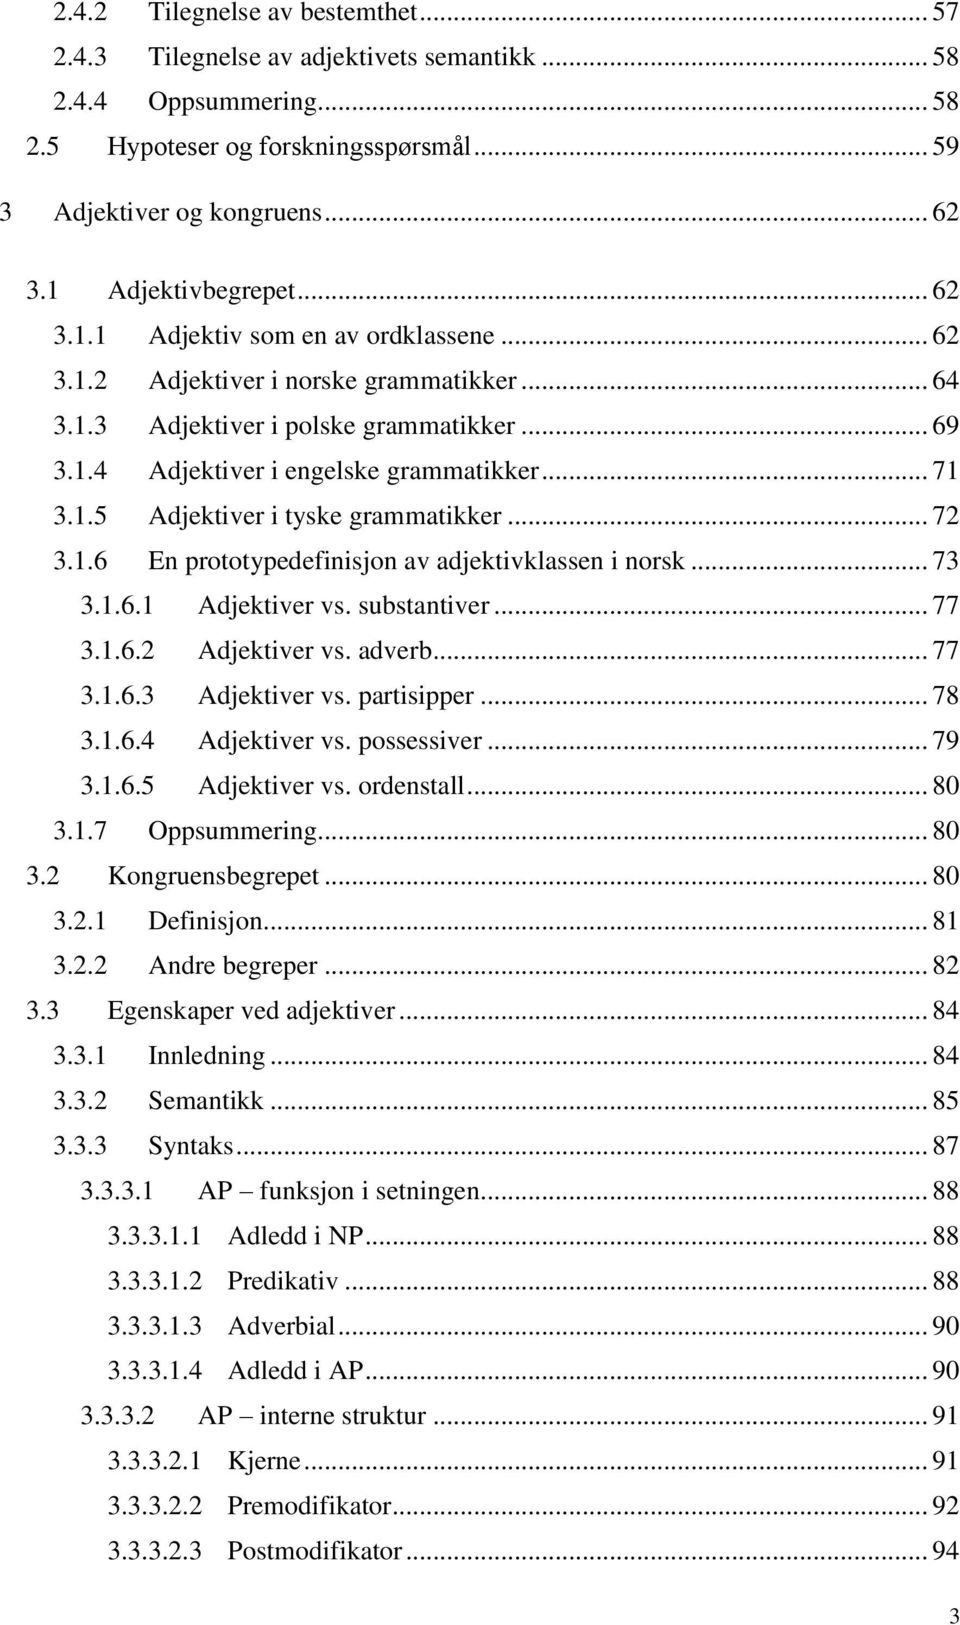 .. 71 3.1.5 Adjektiver i tyske grammatikker... 72 3.1.6 En prototypedefinisjon av adjektivklassen i norsk... 73 3.1.6.1 Adjektiver vs. substantiver... 77 3.1.6.2 Adjektiver vs. adverb... 77 3.1.6.3 Adjektiver vs.